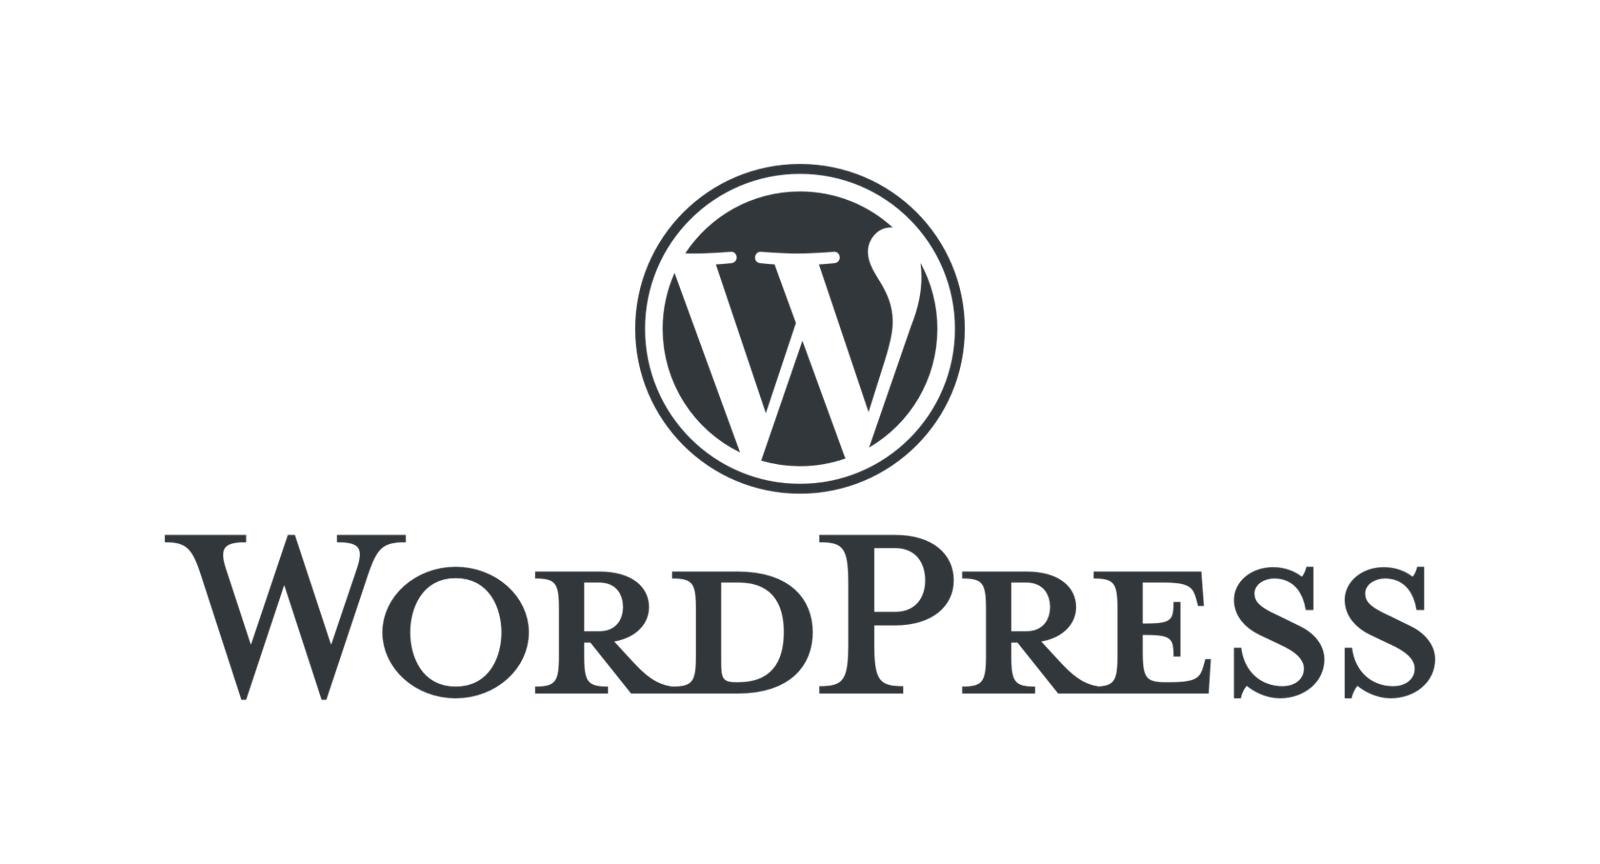 Advanced WordPress Training Kit